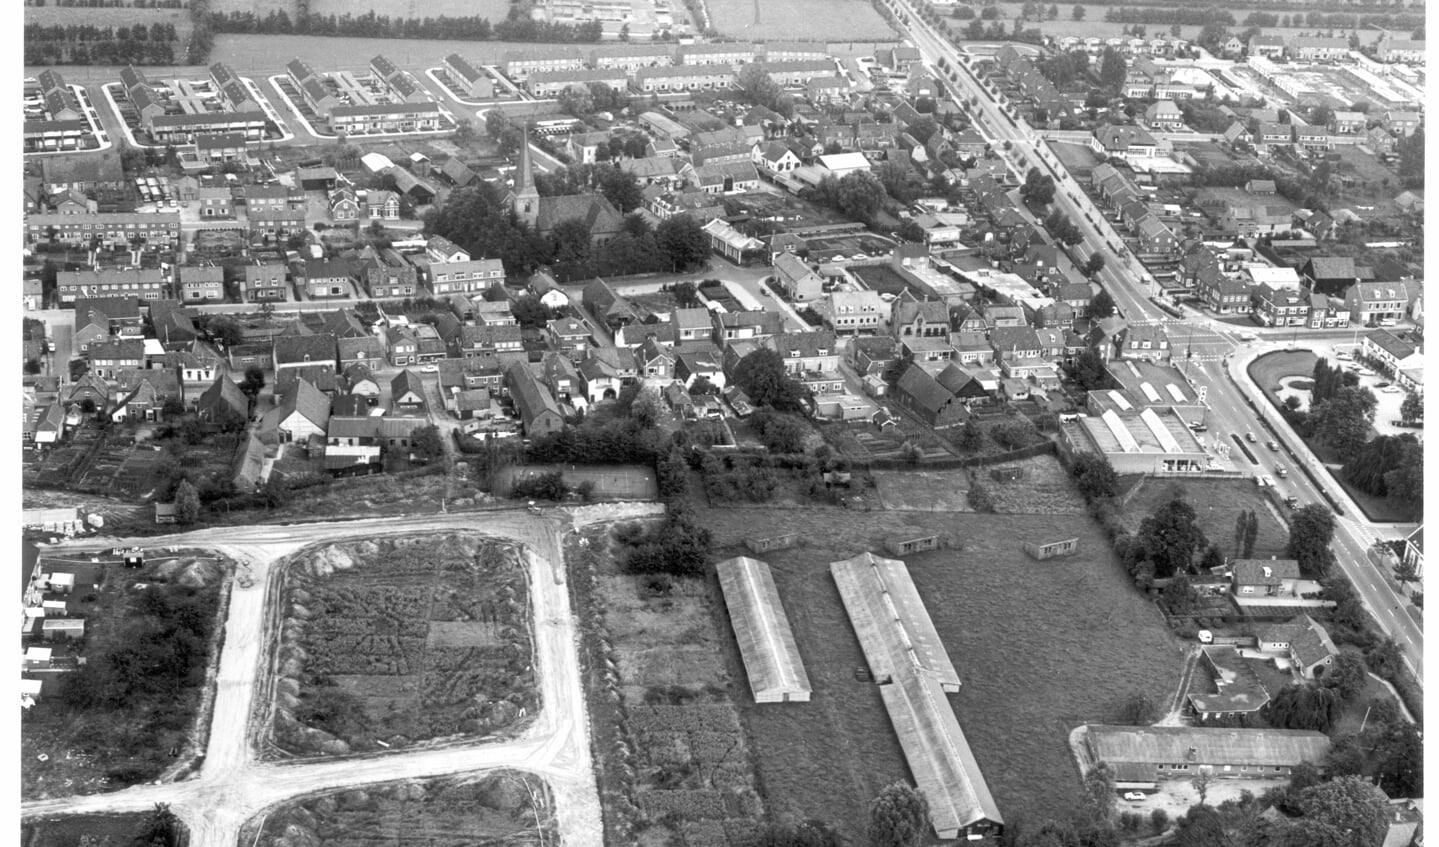 Oude luchtfoto waarop vlakbij het bouwterrein van de wijk 't Schilt nog de oude tennisbaan is te zien tussen wat struiken